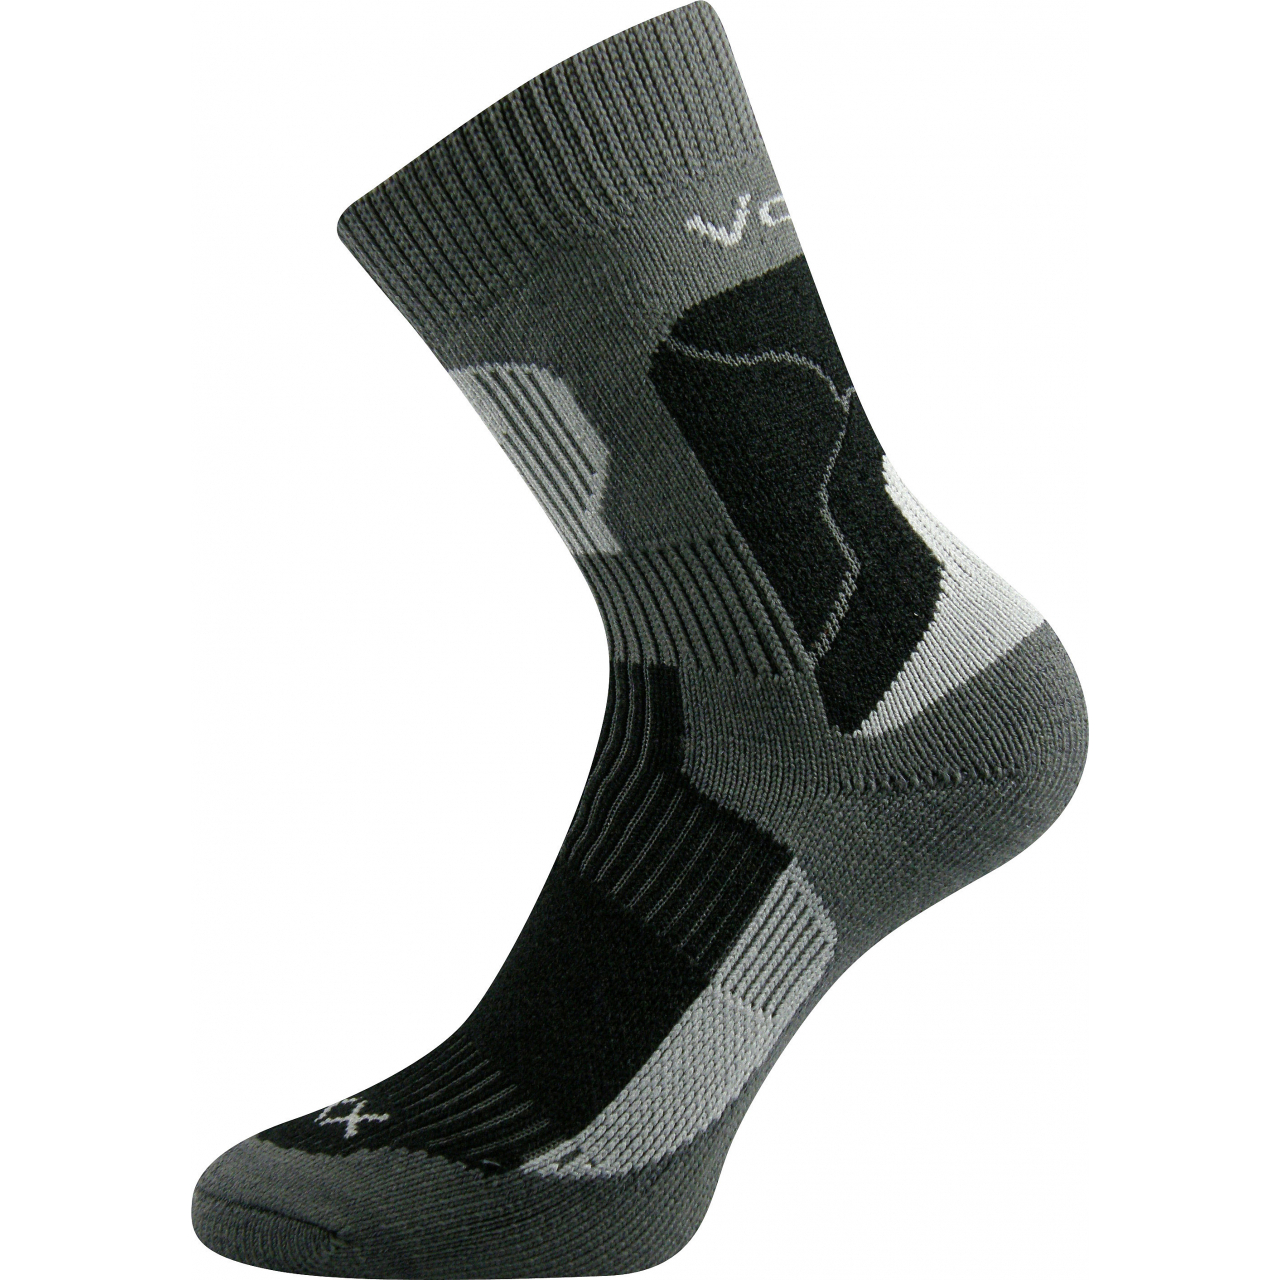 Ponožky unisex termo Voxx Treking - tmavě šedé-černé, 46-48